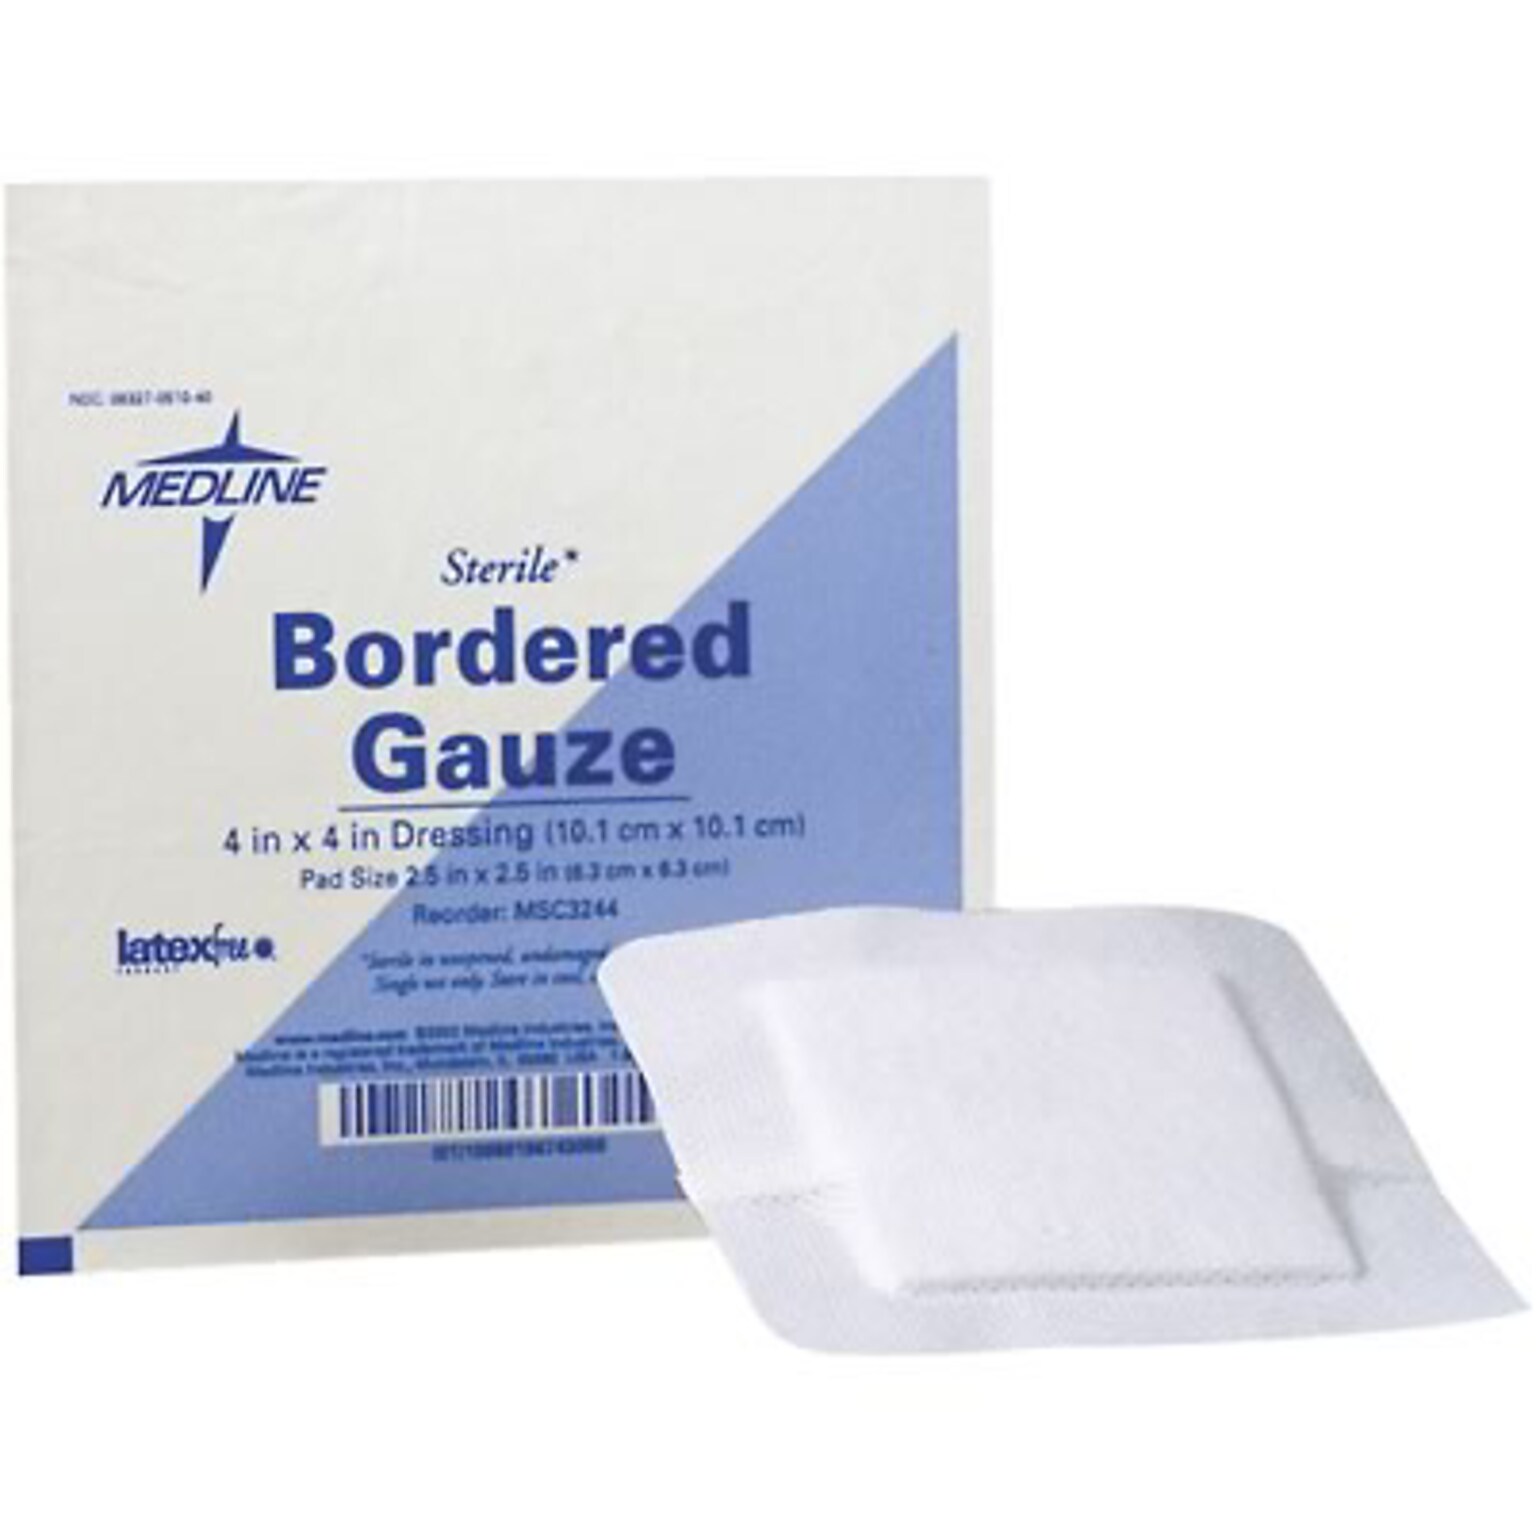 Medline Sterile Bordered Gauze; 6x6